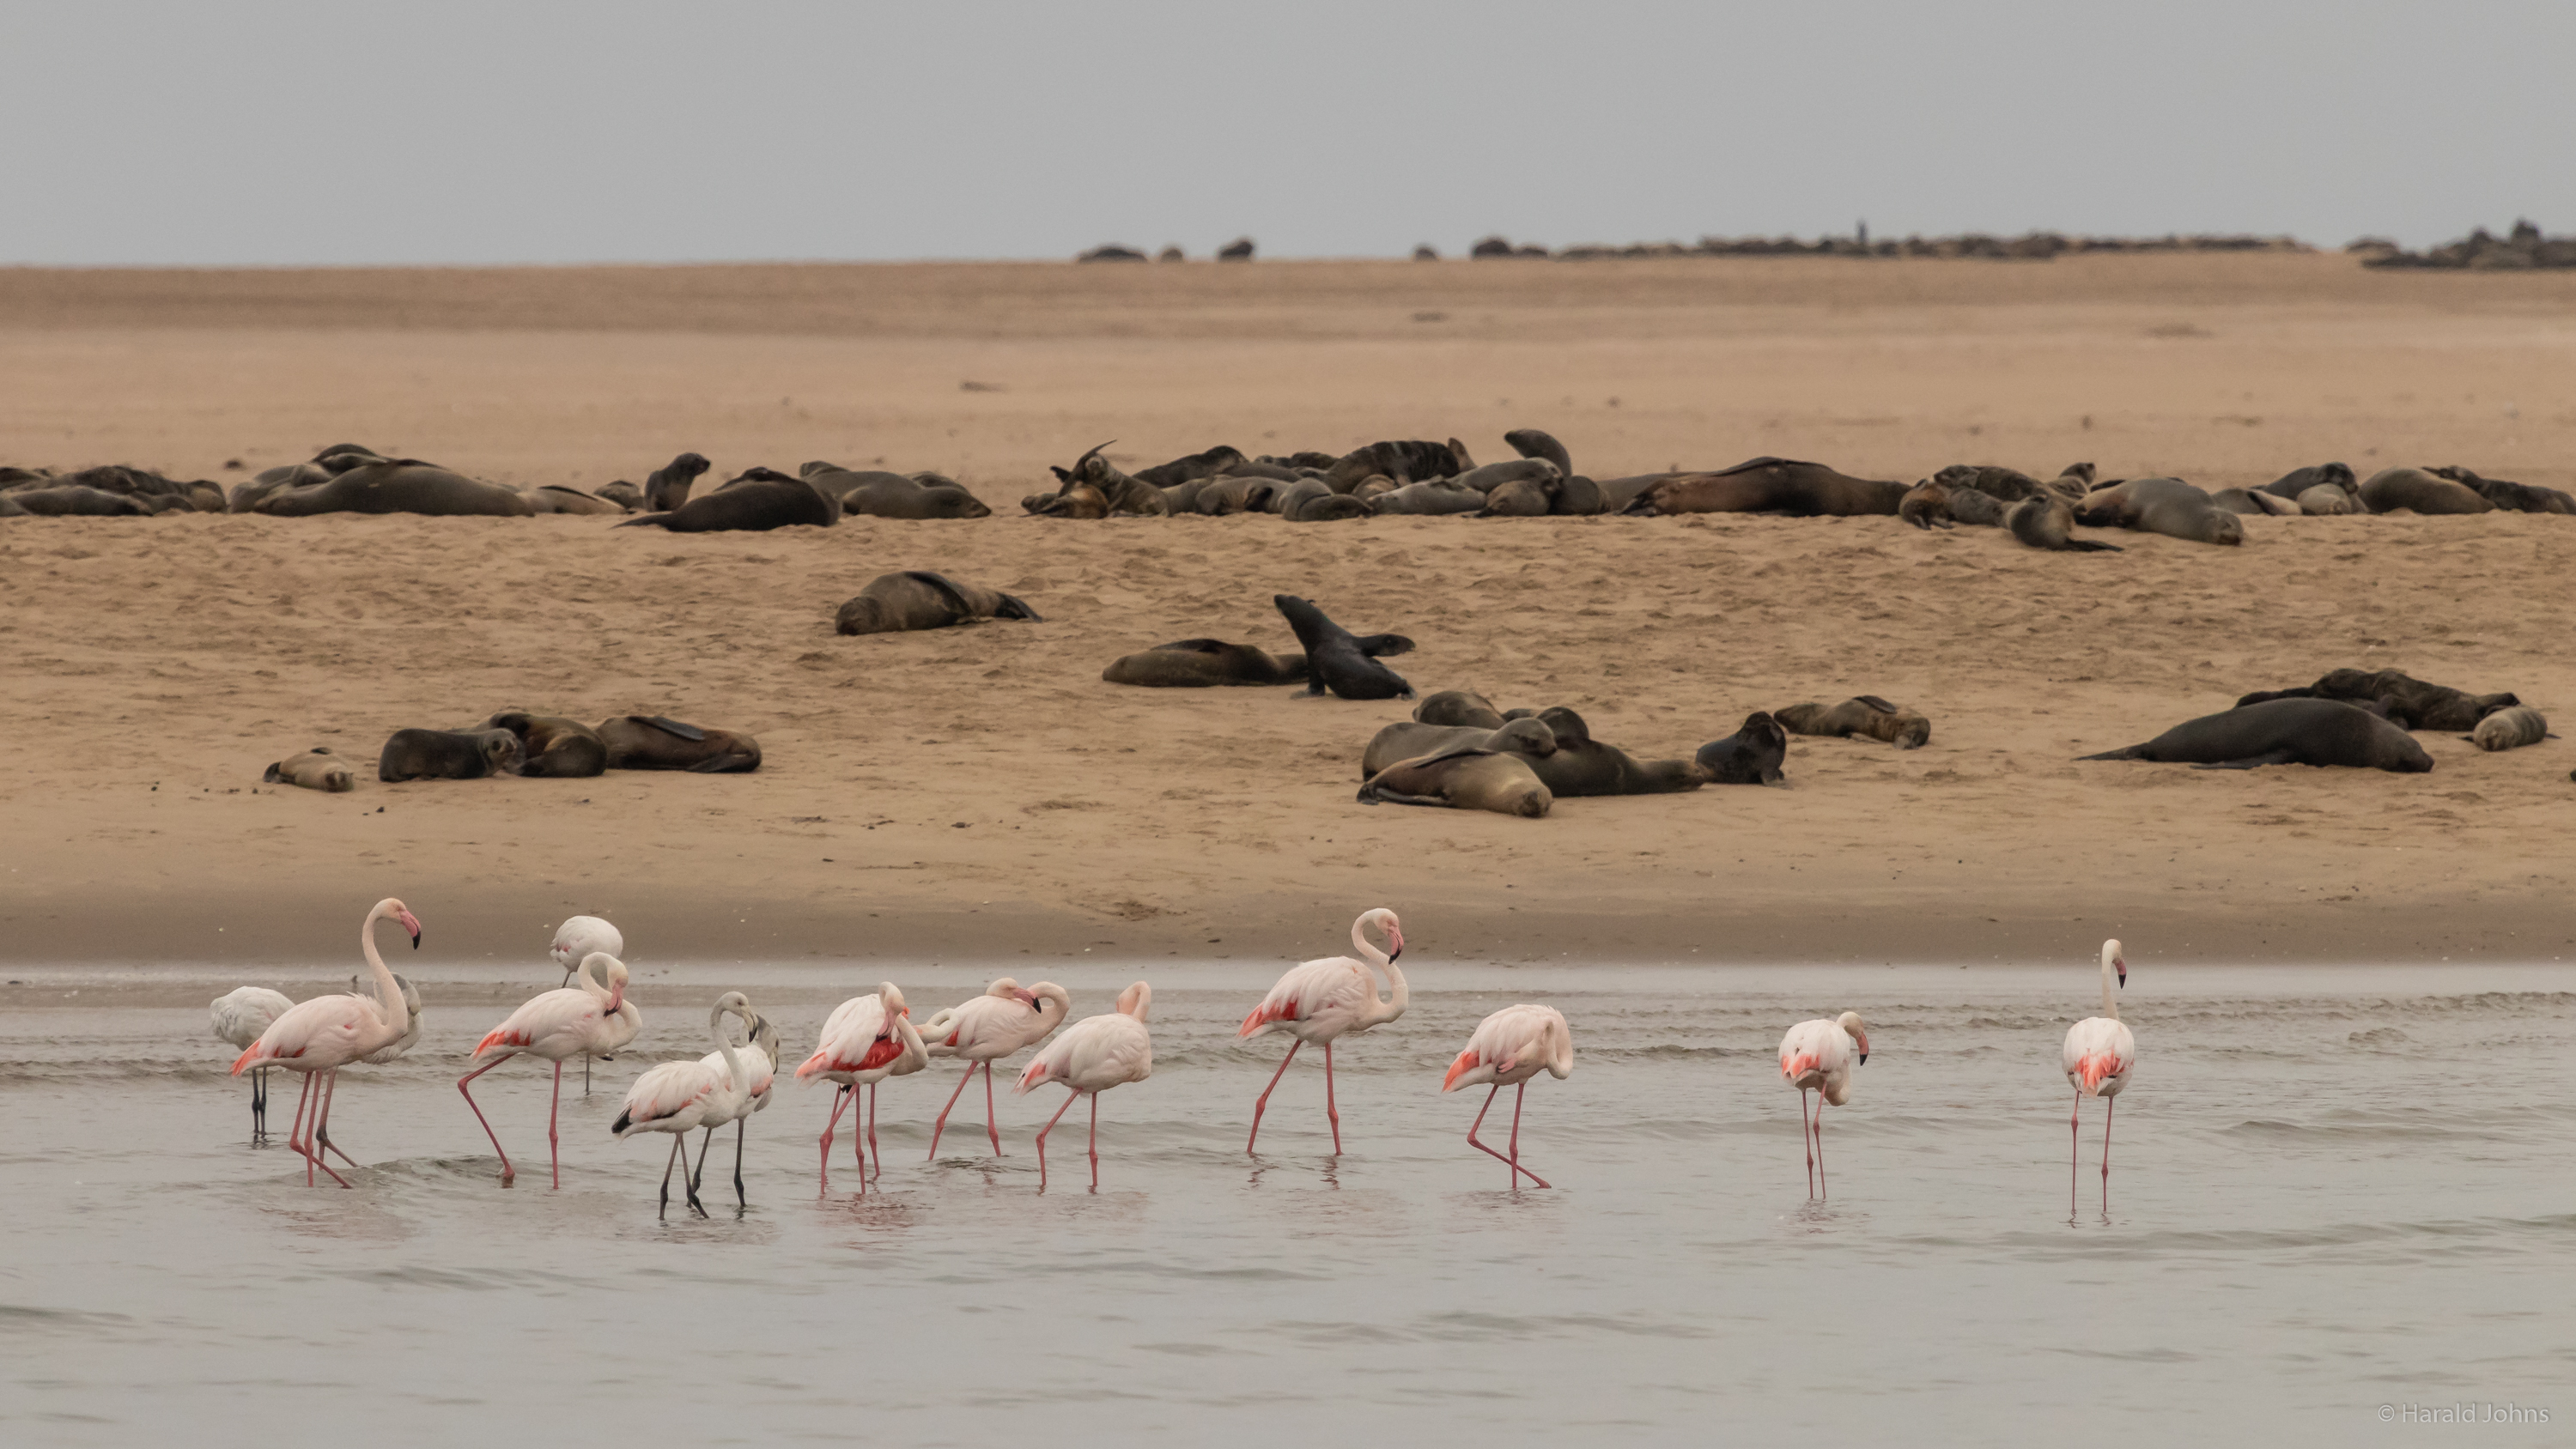 Robbenkolonie und Flamingos auf der Landzunge von Walvis Bay